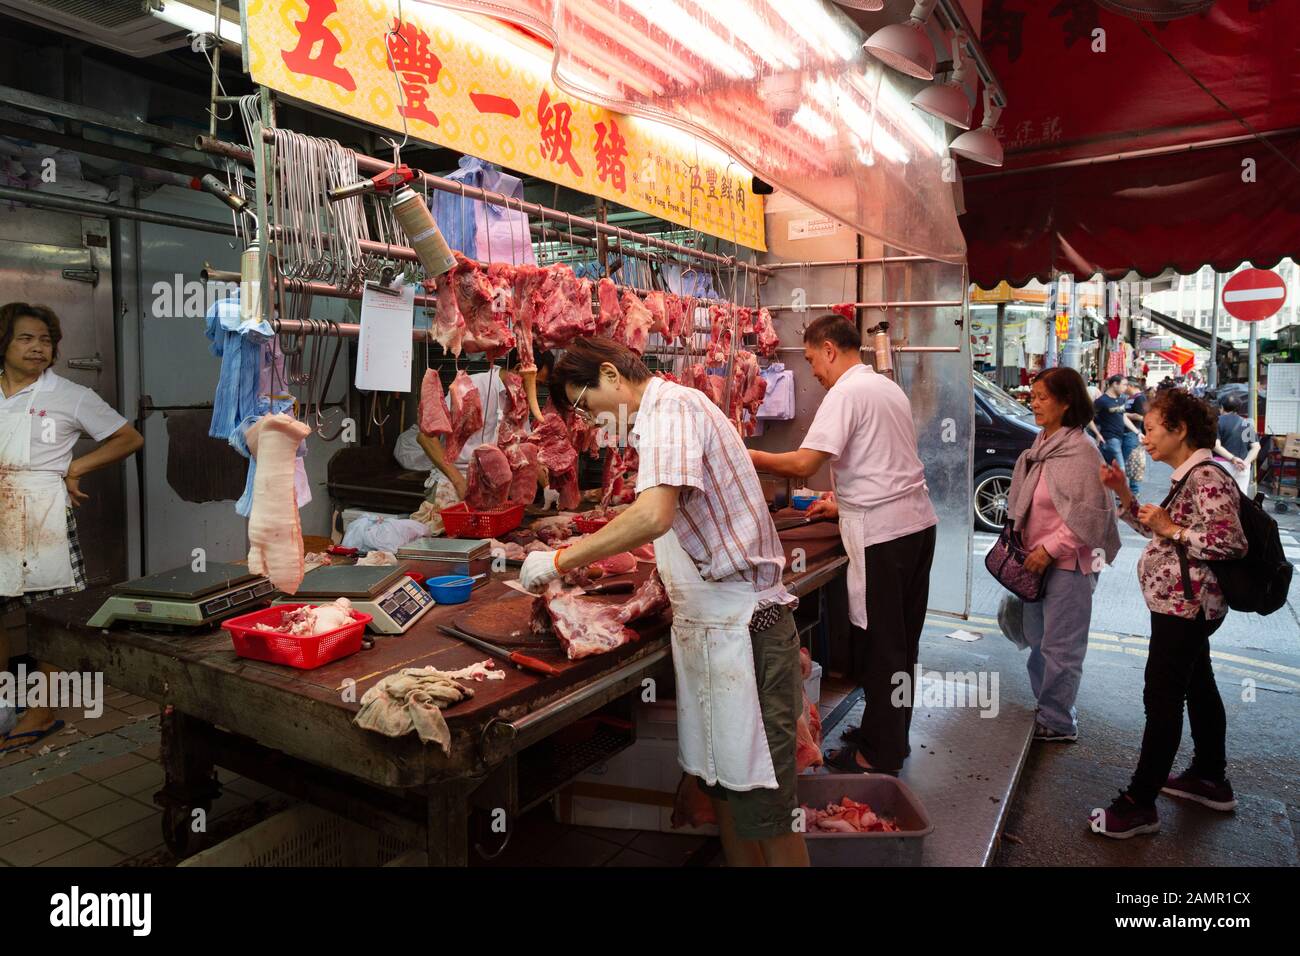 Marché alimentaire de Hong Kong - un boucher préparer la viande pour la vente de viande dans une stalle, Kowloon Hong Kong Asia Banque D'Images